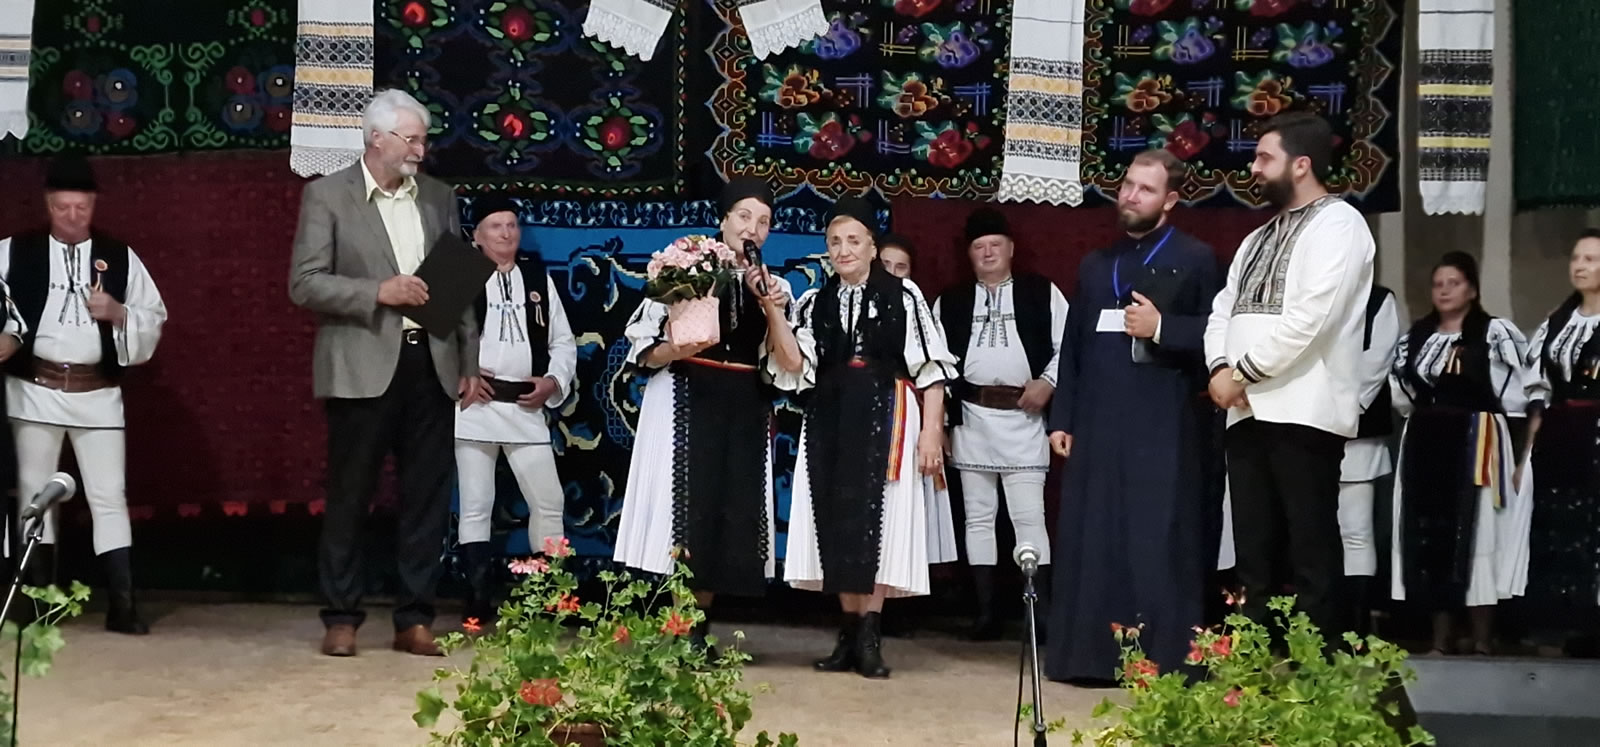 Doamna Silvia Macrea Senior – cetățean de onoare al comunei Bârghiș